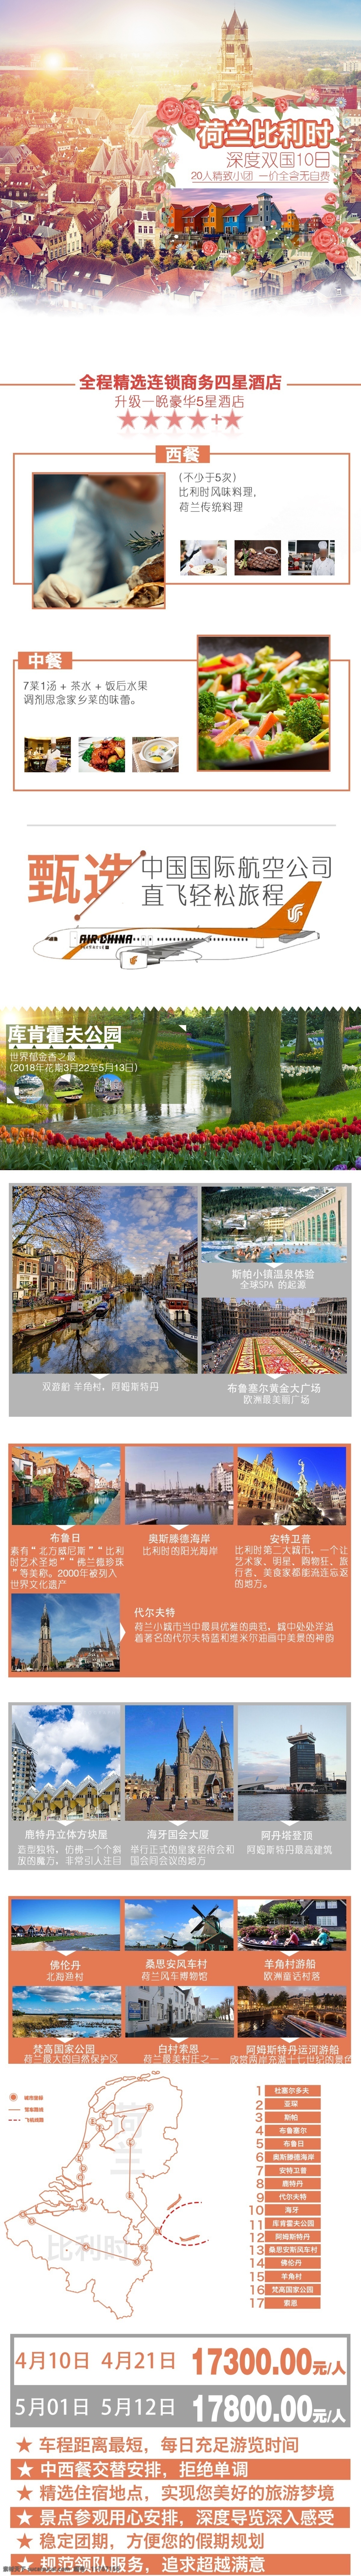 荷兰 比利时 旅行 模板 旅游 清新 网页 海报 简约